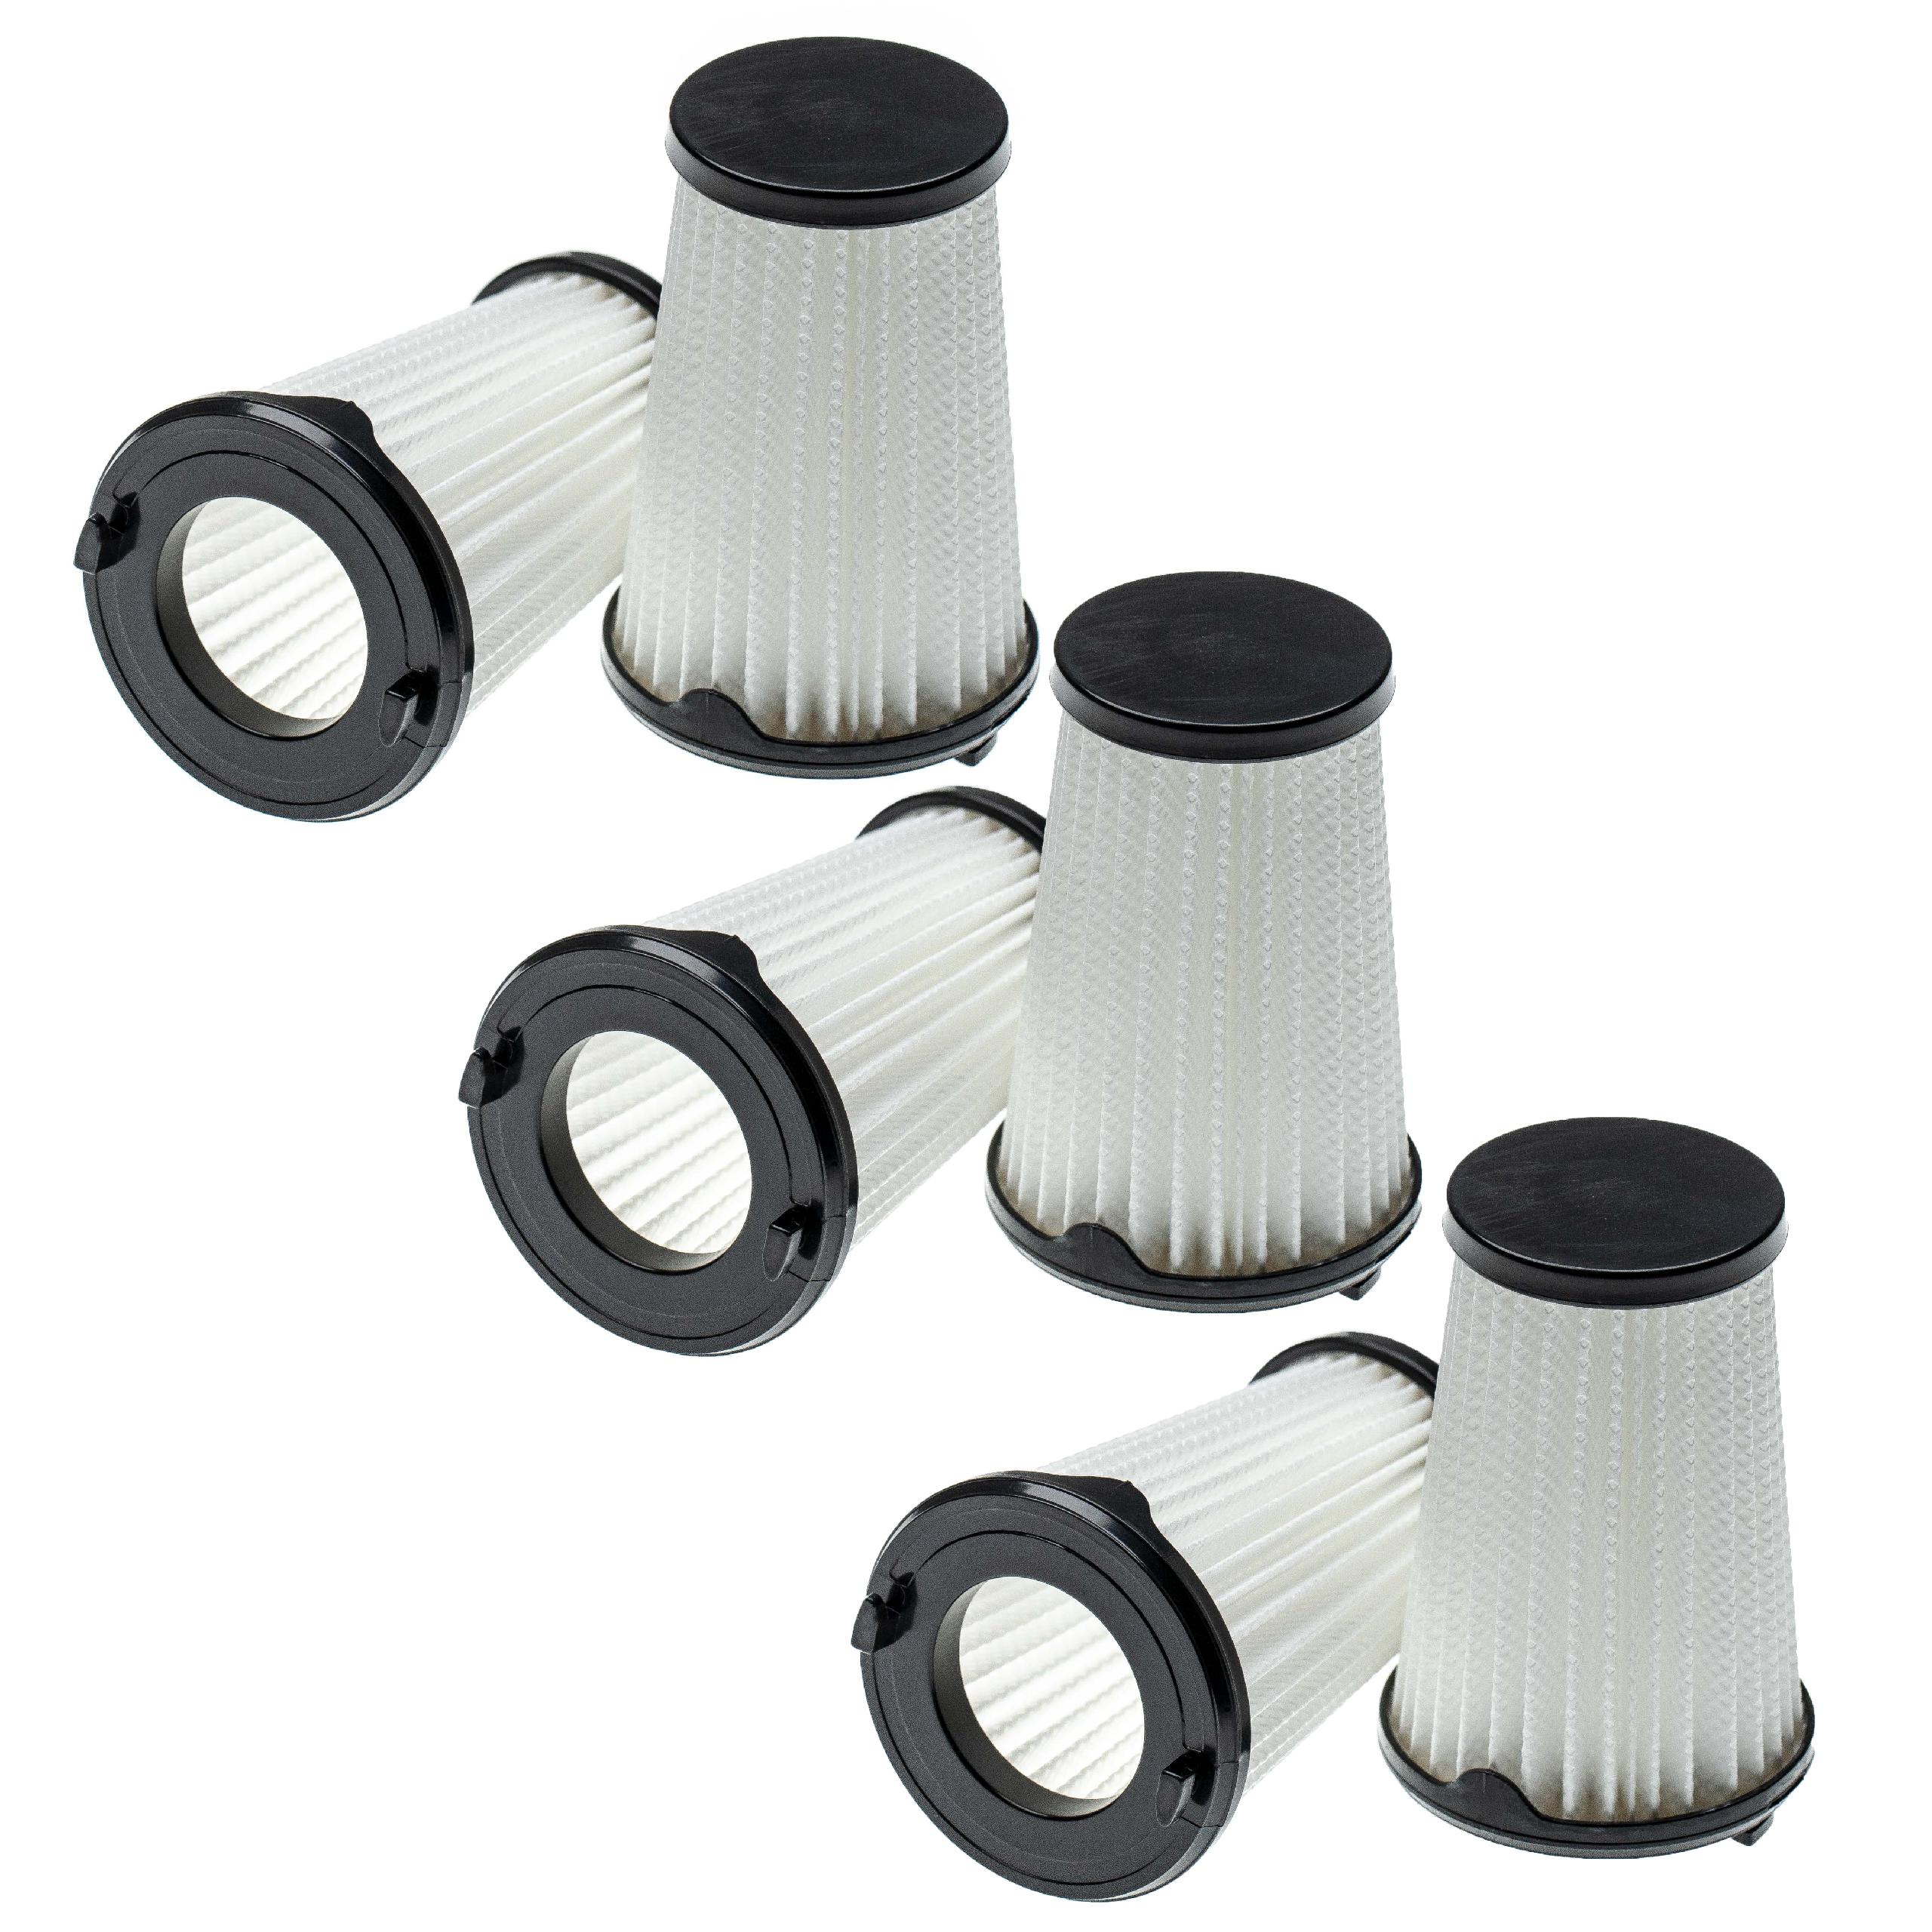 6x Filtro sostituisce AEG AEF150, 9001683755, 90094073100 per aspirapolvere - filtro a lamelle, nero / bianco